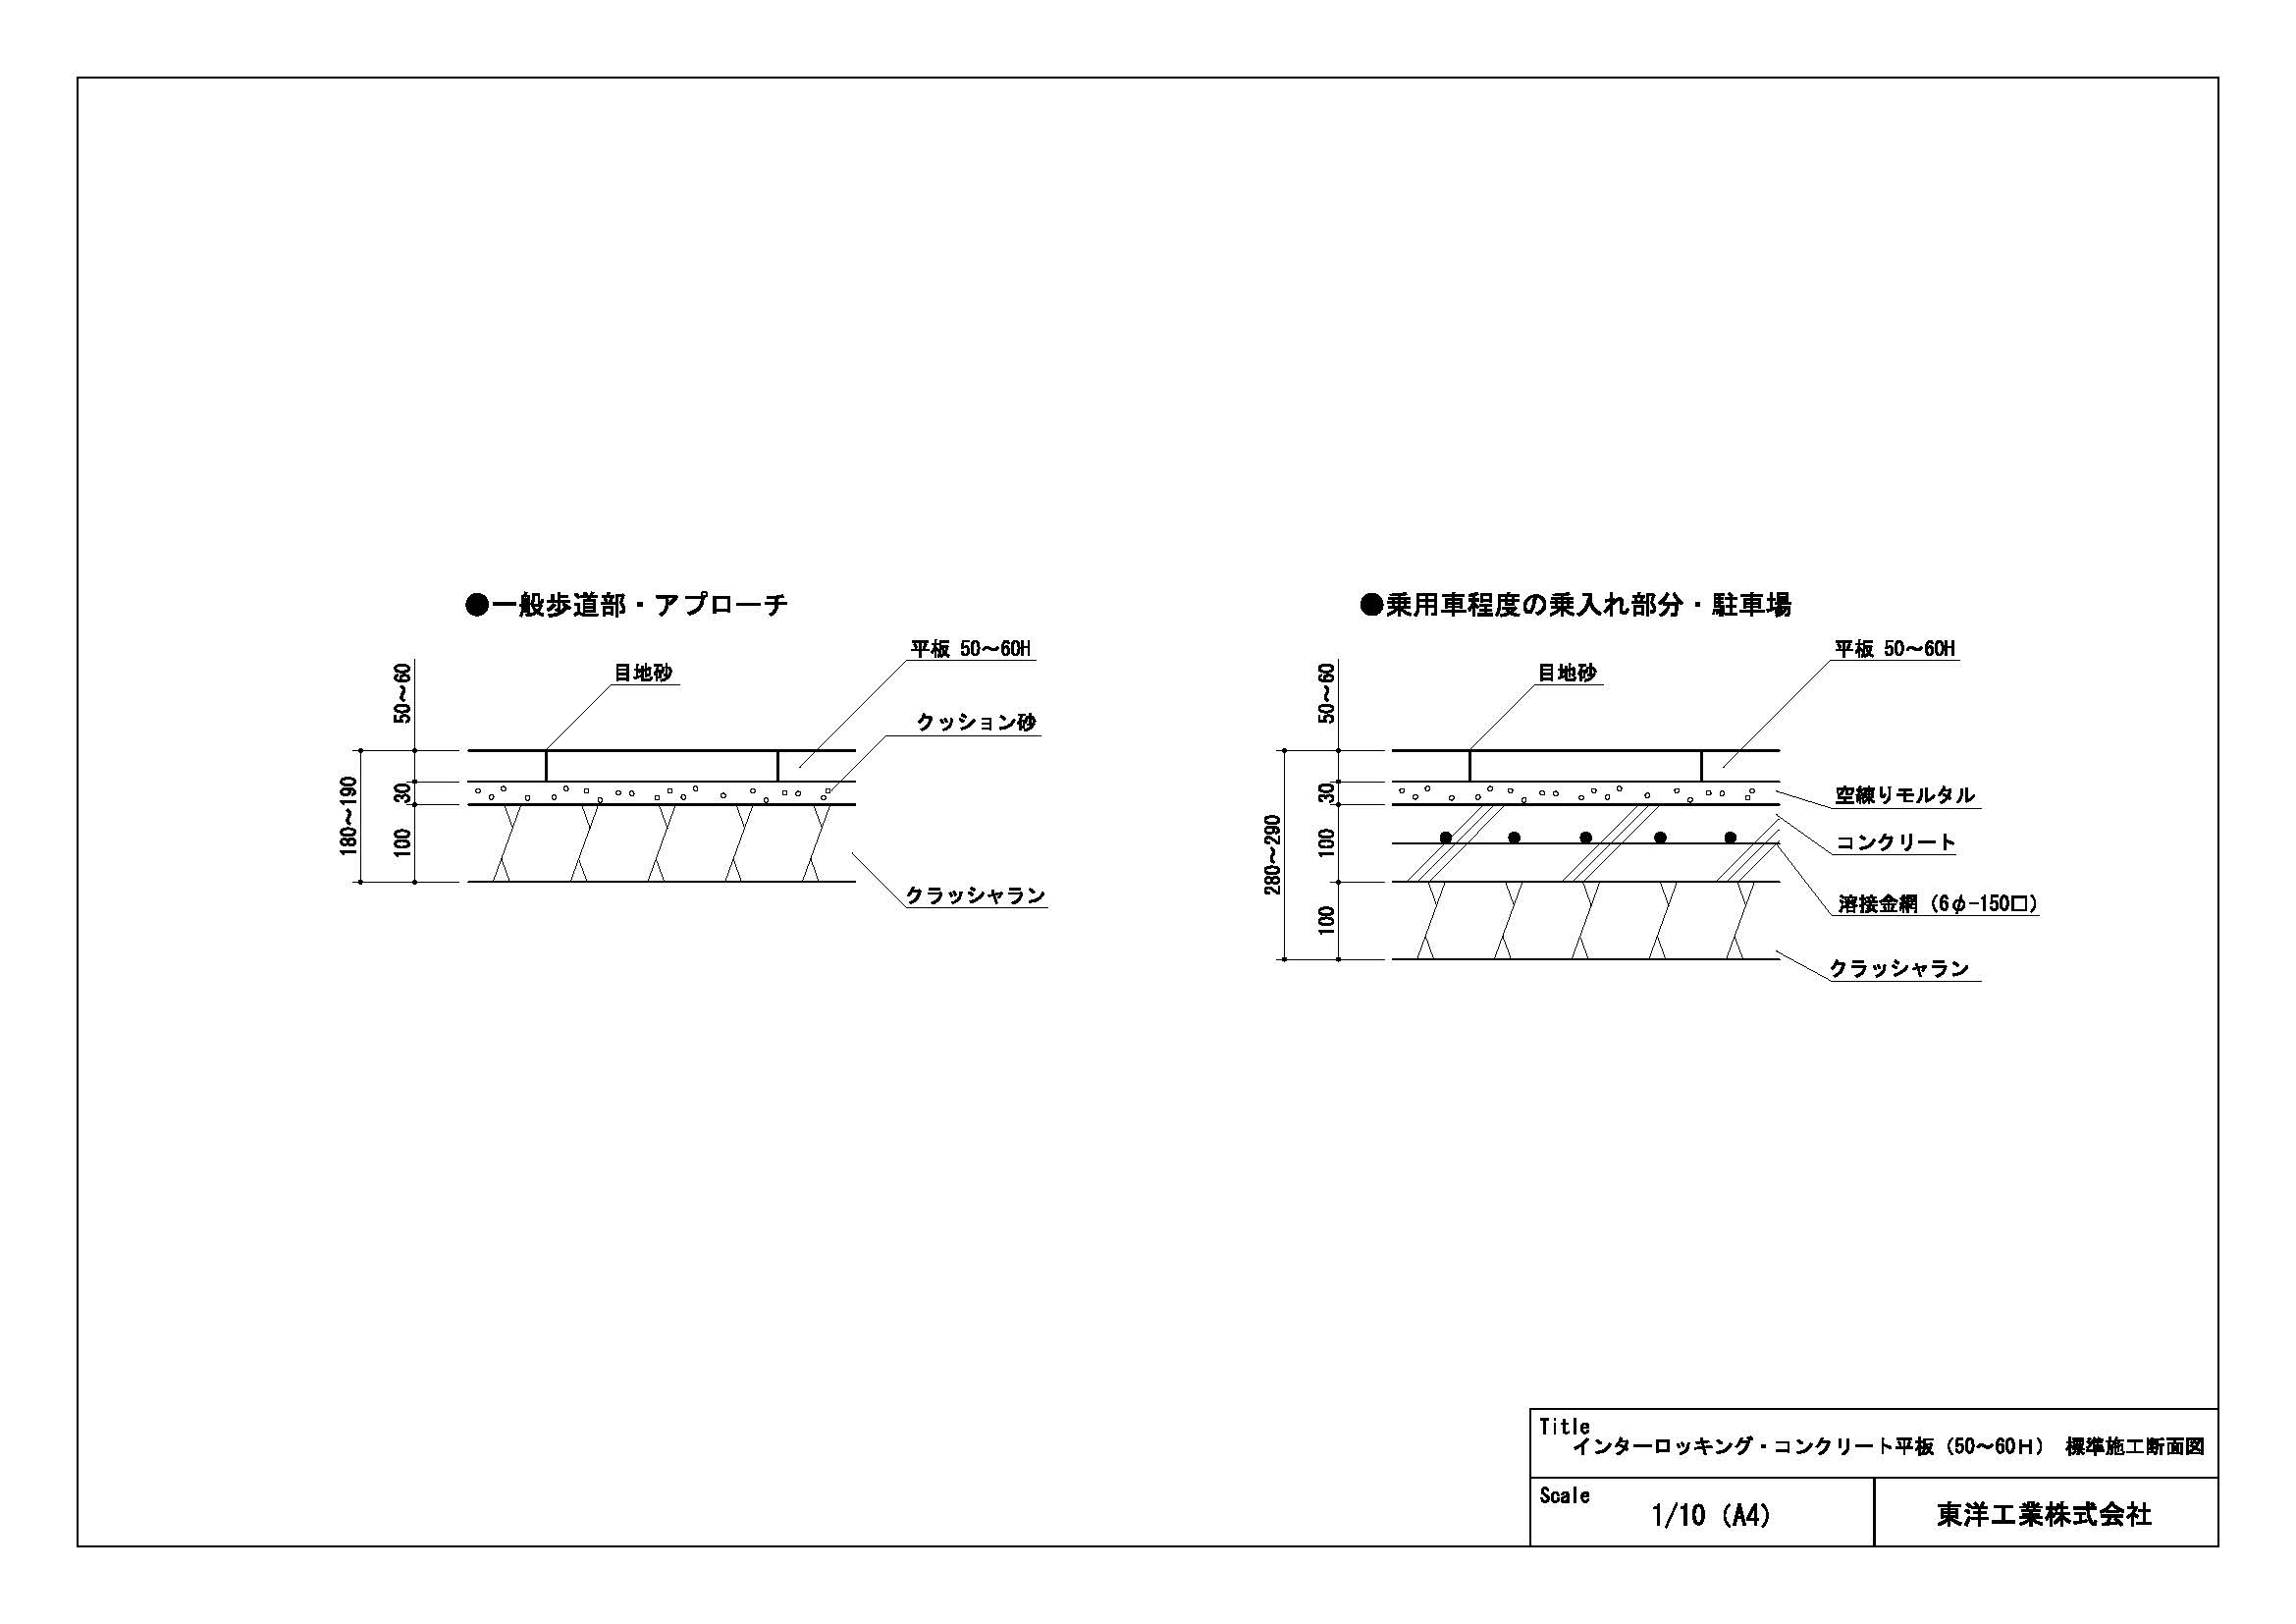 インターロッキング・コンクリート平板（50～60H）標準施工断面図